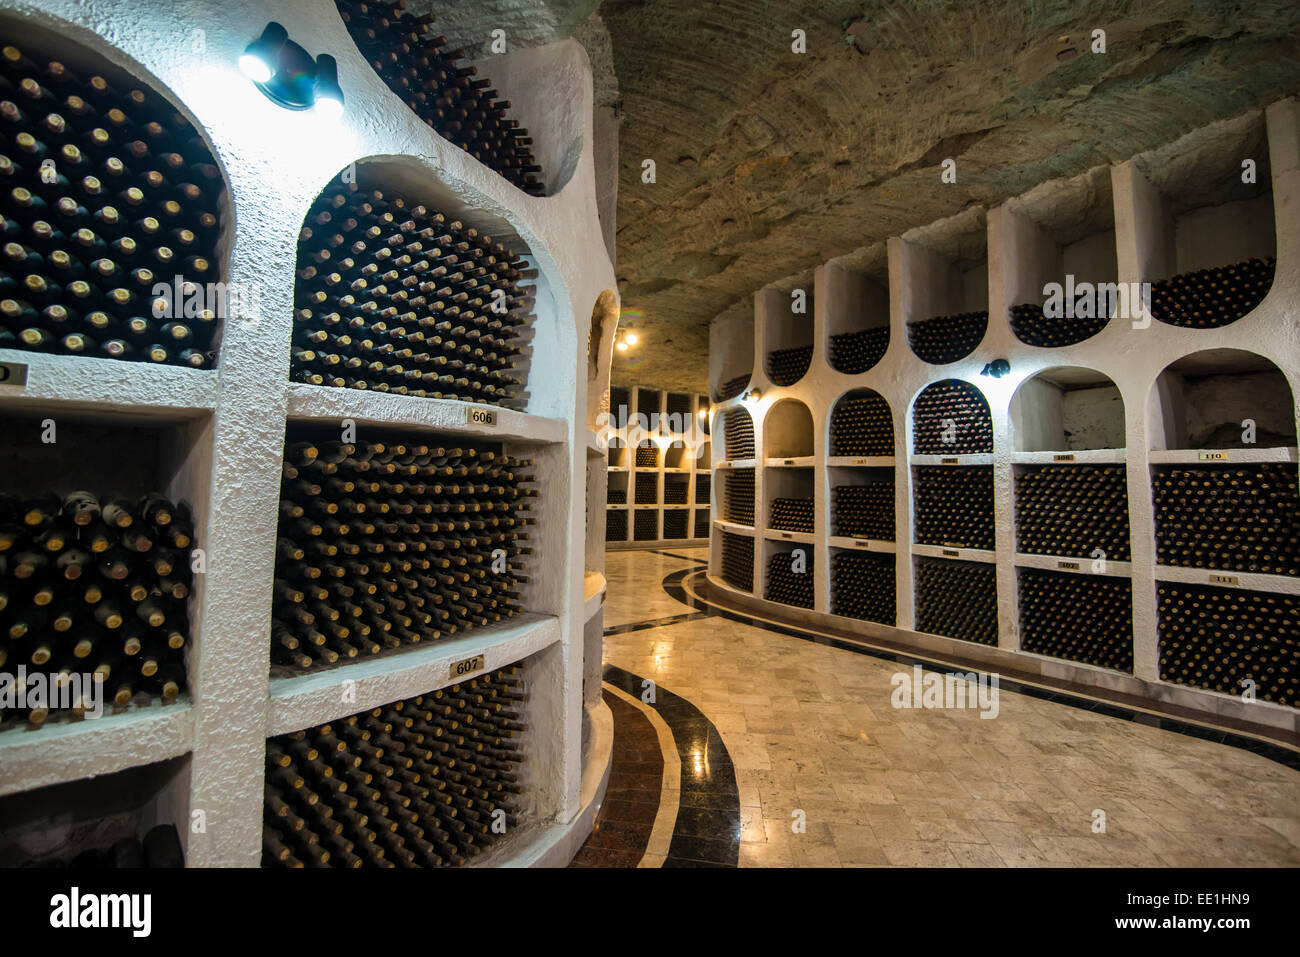 Vinos seleccionados de los últimos en el área de cata de vinos en las bodegas de Cricova, Moldavia Foto de stock